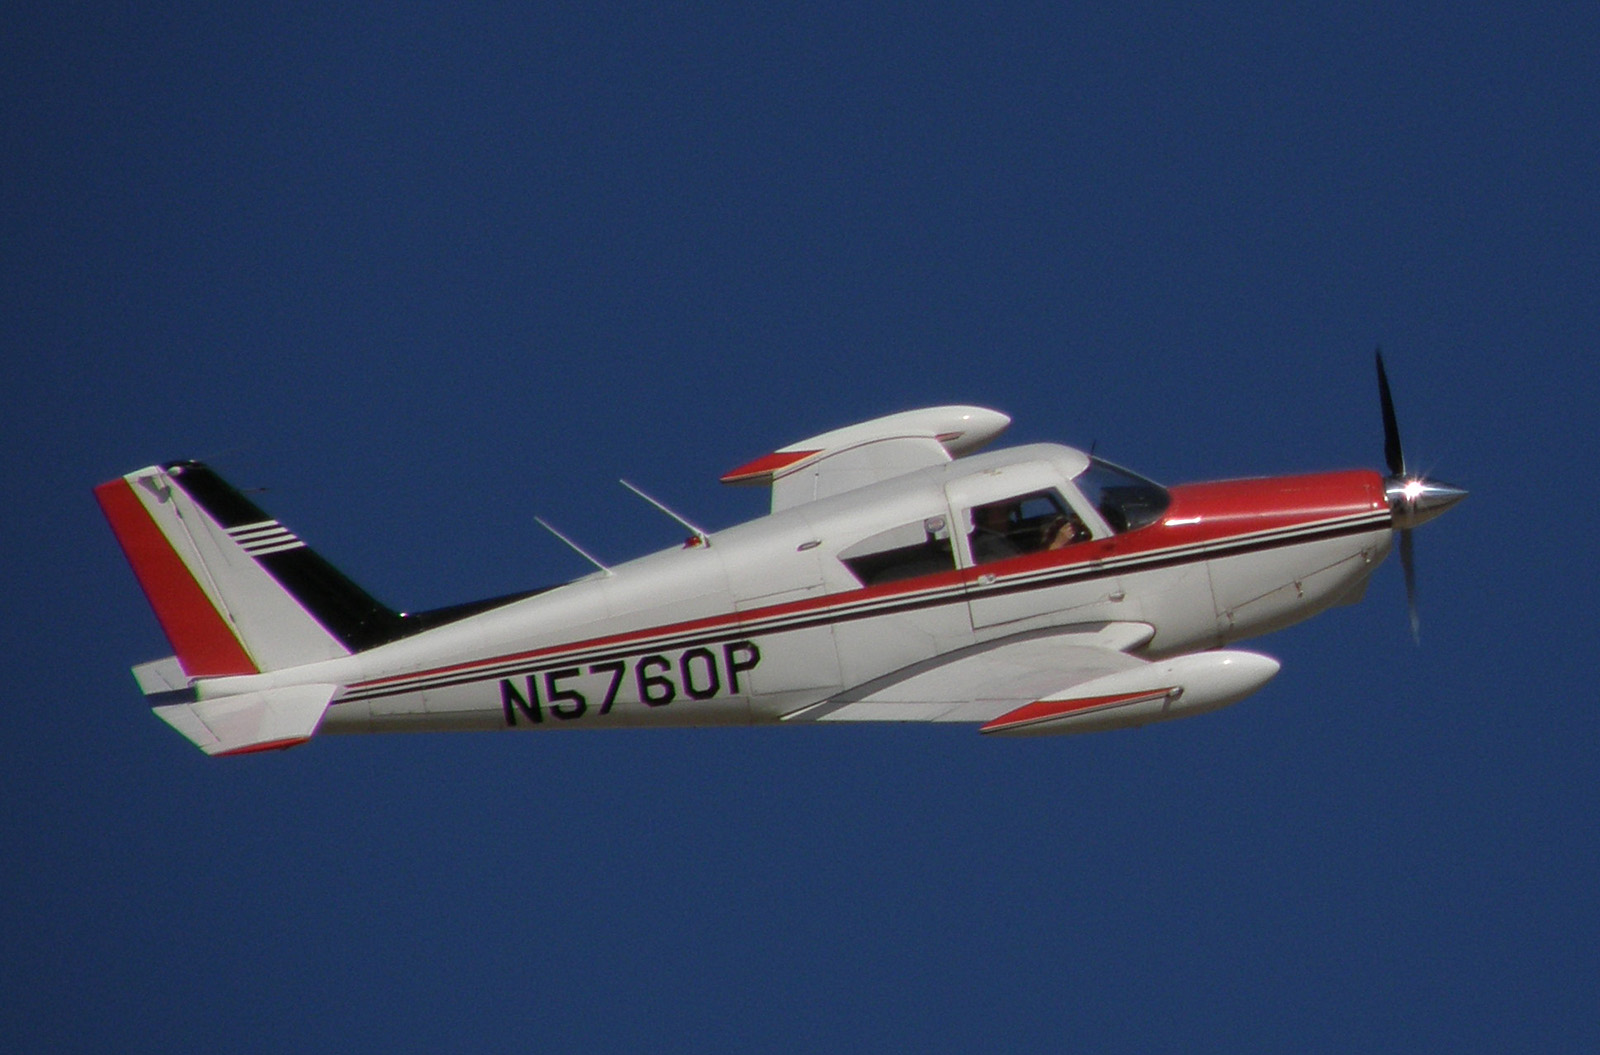 Piper PA-24 Comanche next